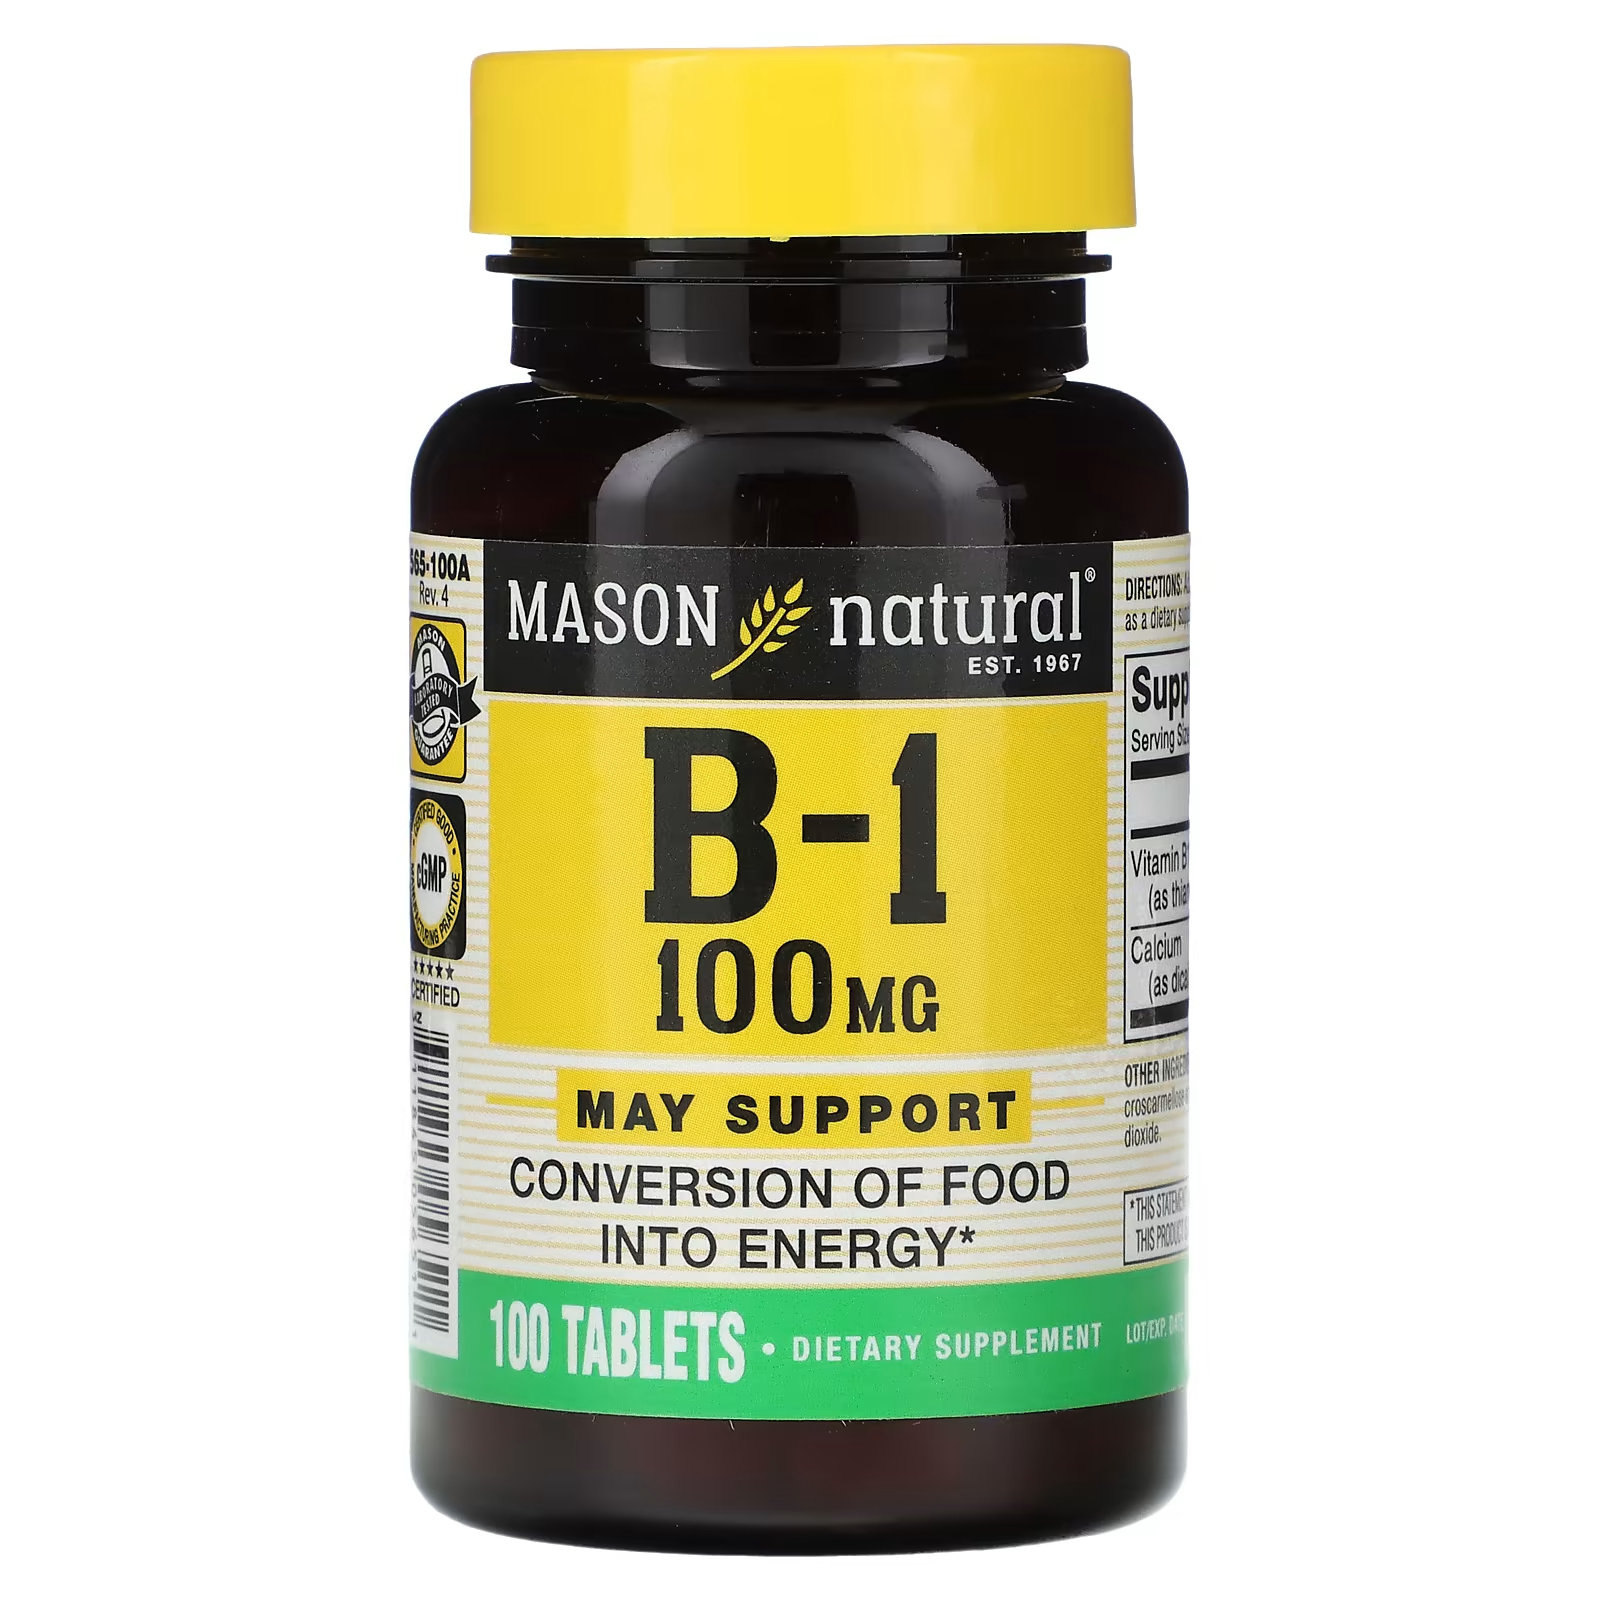 Биологически активная добавка Mason Natural B-1, 100 мг., 100 таблеток